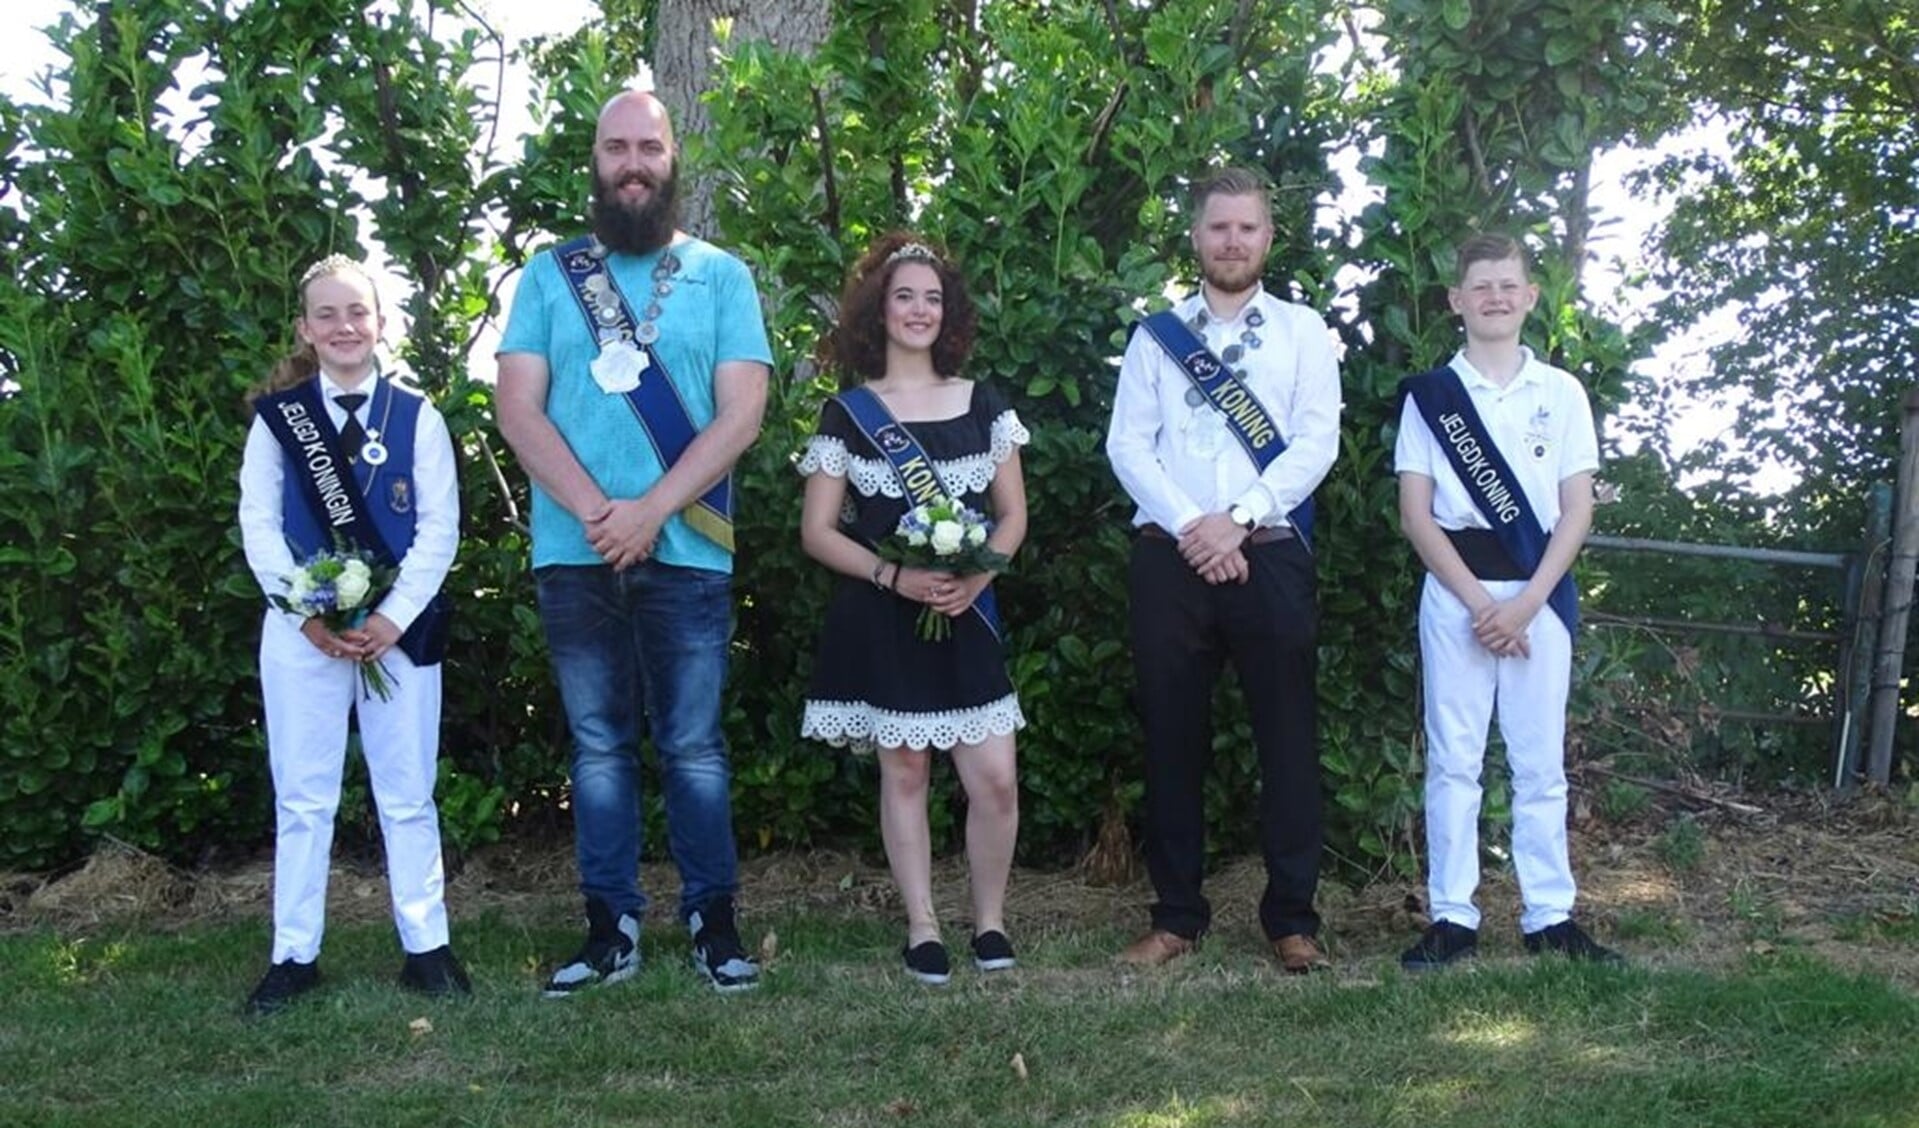 De huidige koningen en koninginnen, vlnr: Janne Peters; Niels Hendriks, Nikky Mol, Niels Peters en Rob Wienholst. Foto: PR